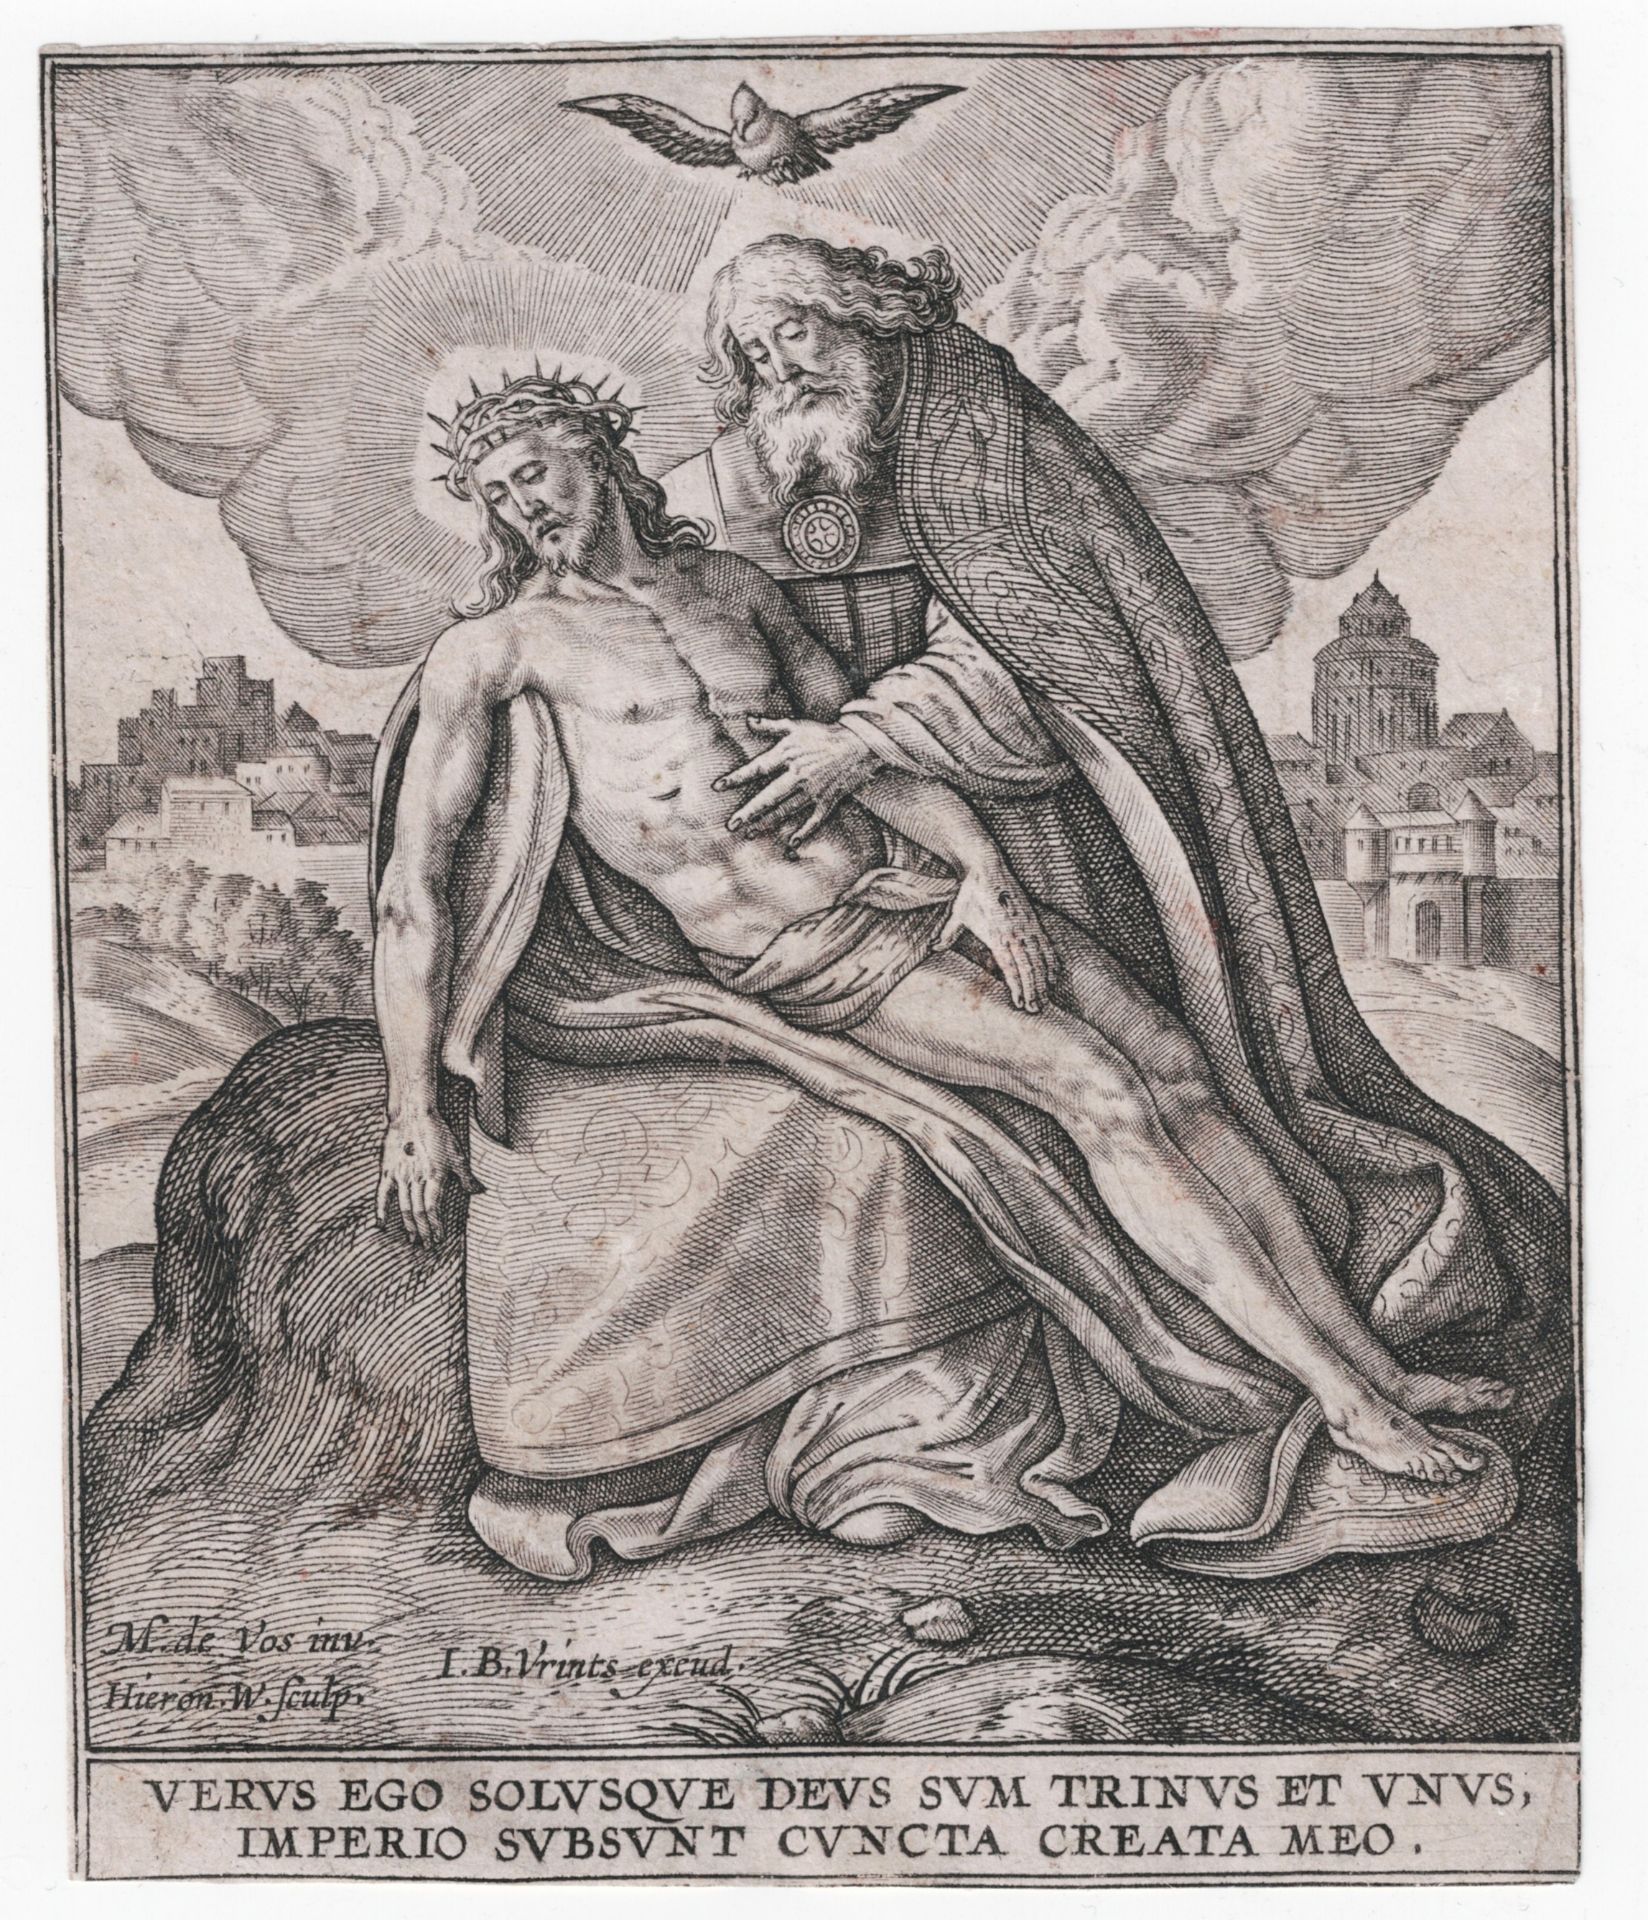 Hieronymus Wierix (1553-1619), Maerten de Vos (1532-1603)